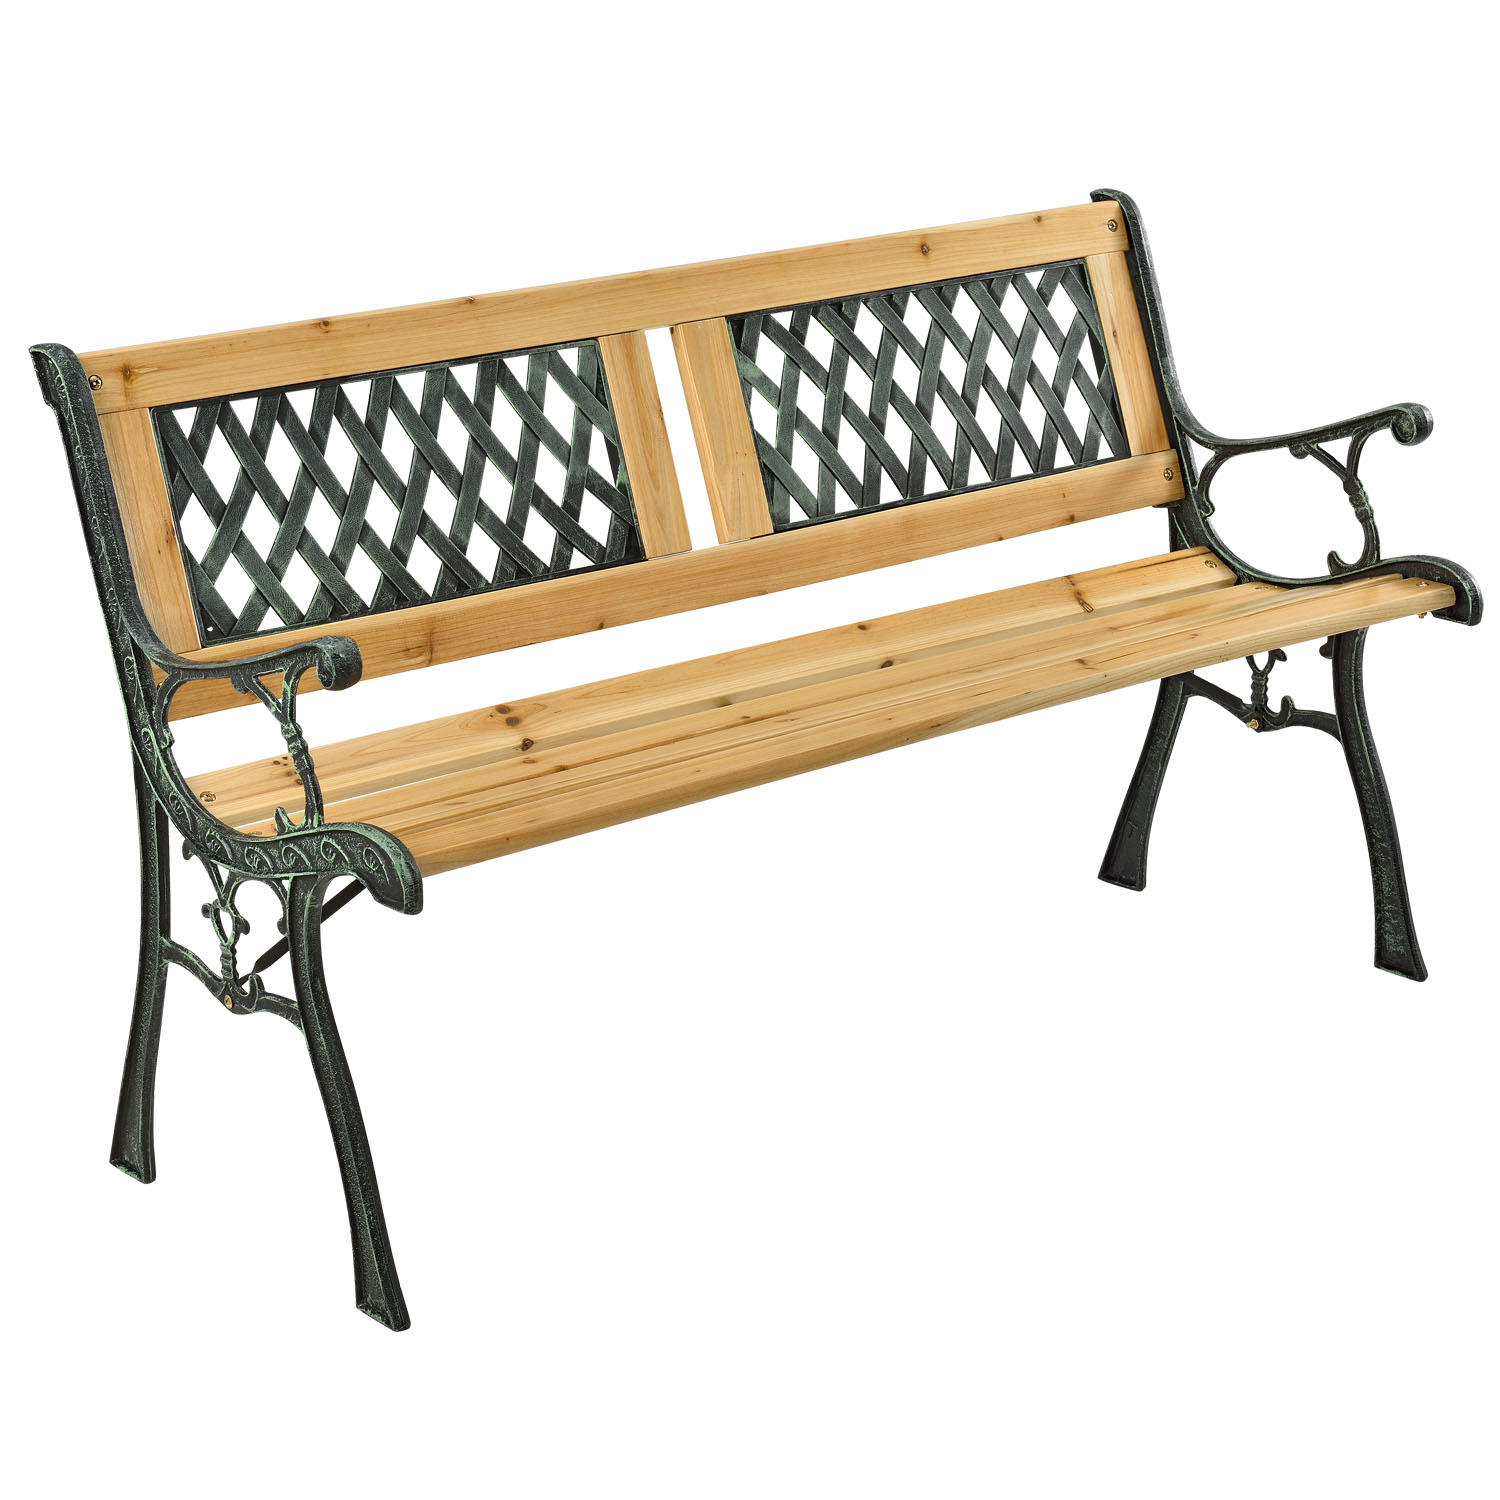 E-shop Juskys 2-miestna záhradná lavica Sanremo z lakovaného dreva a kovových častí